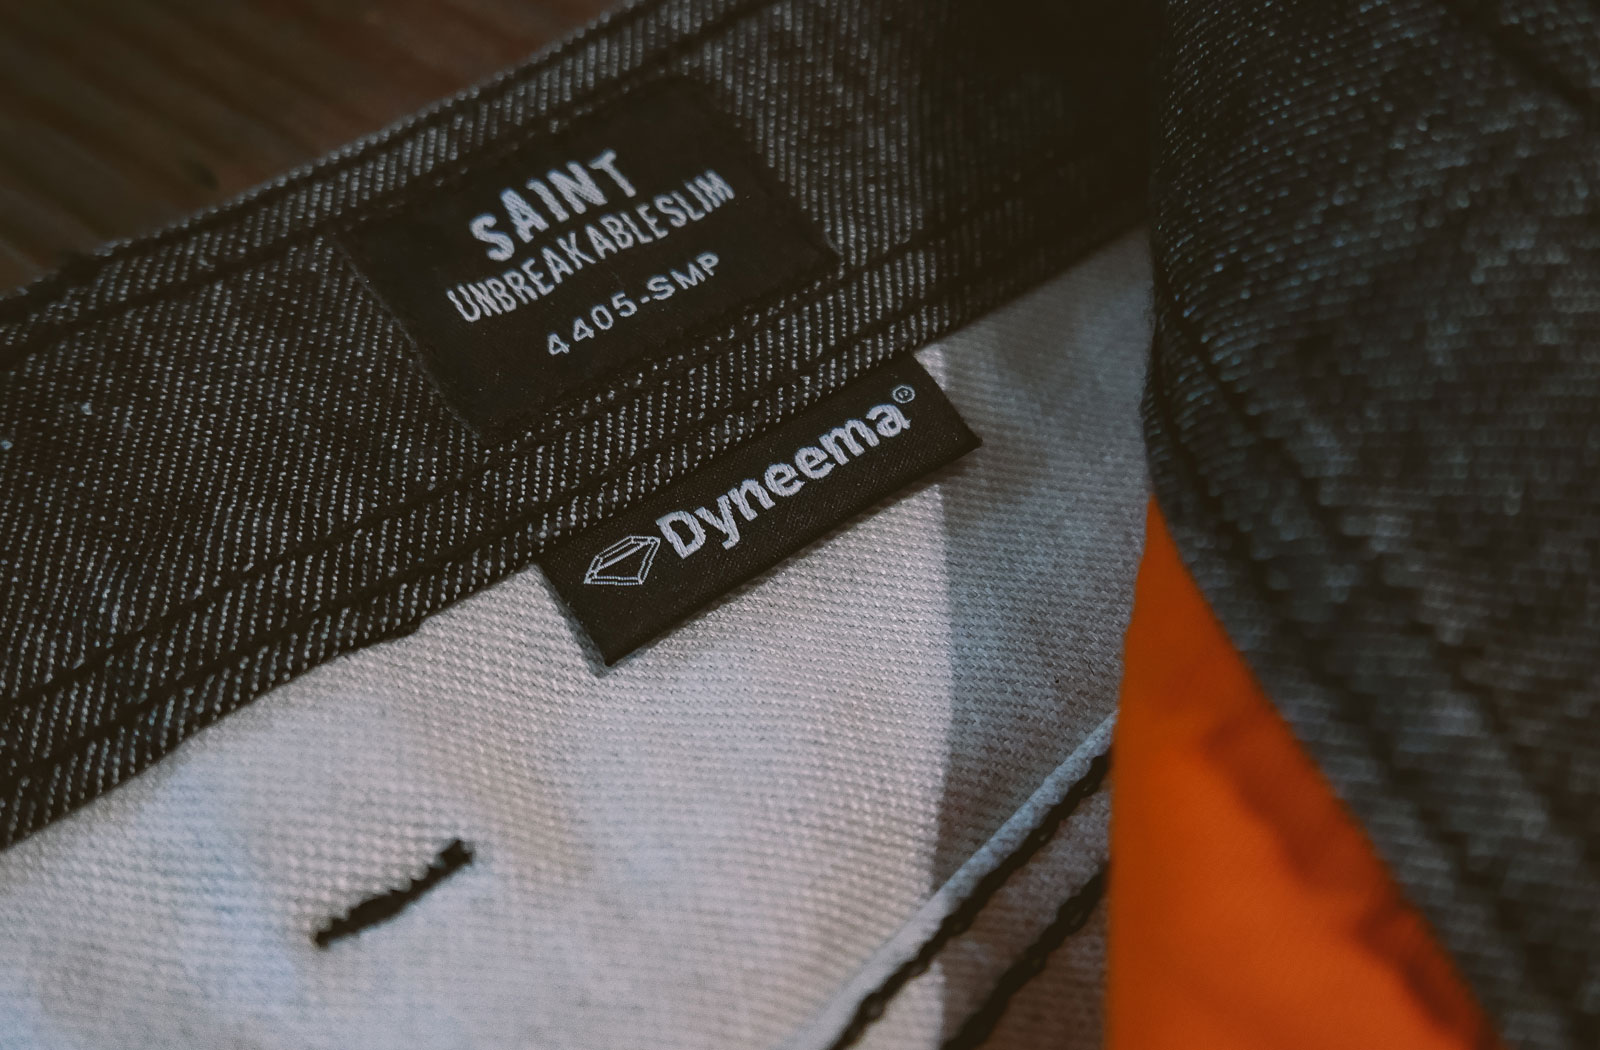 Saint Unbreakable Slim Jeans Review